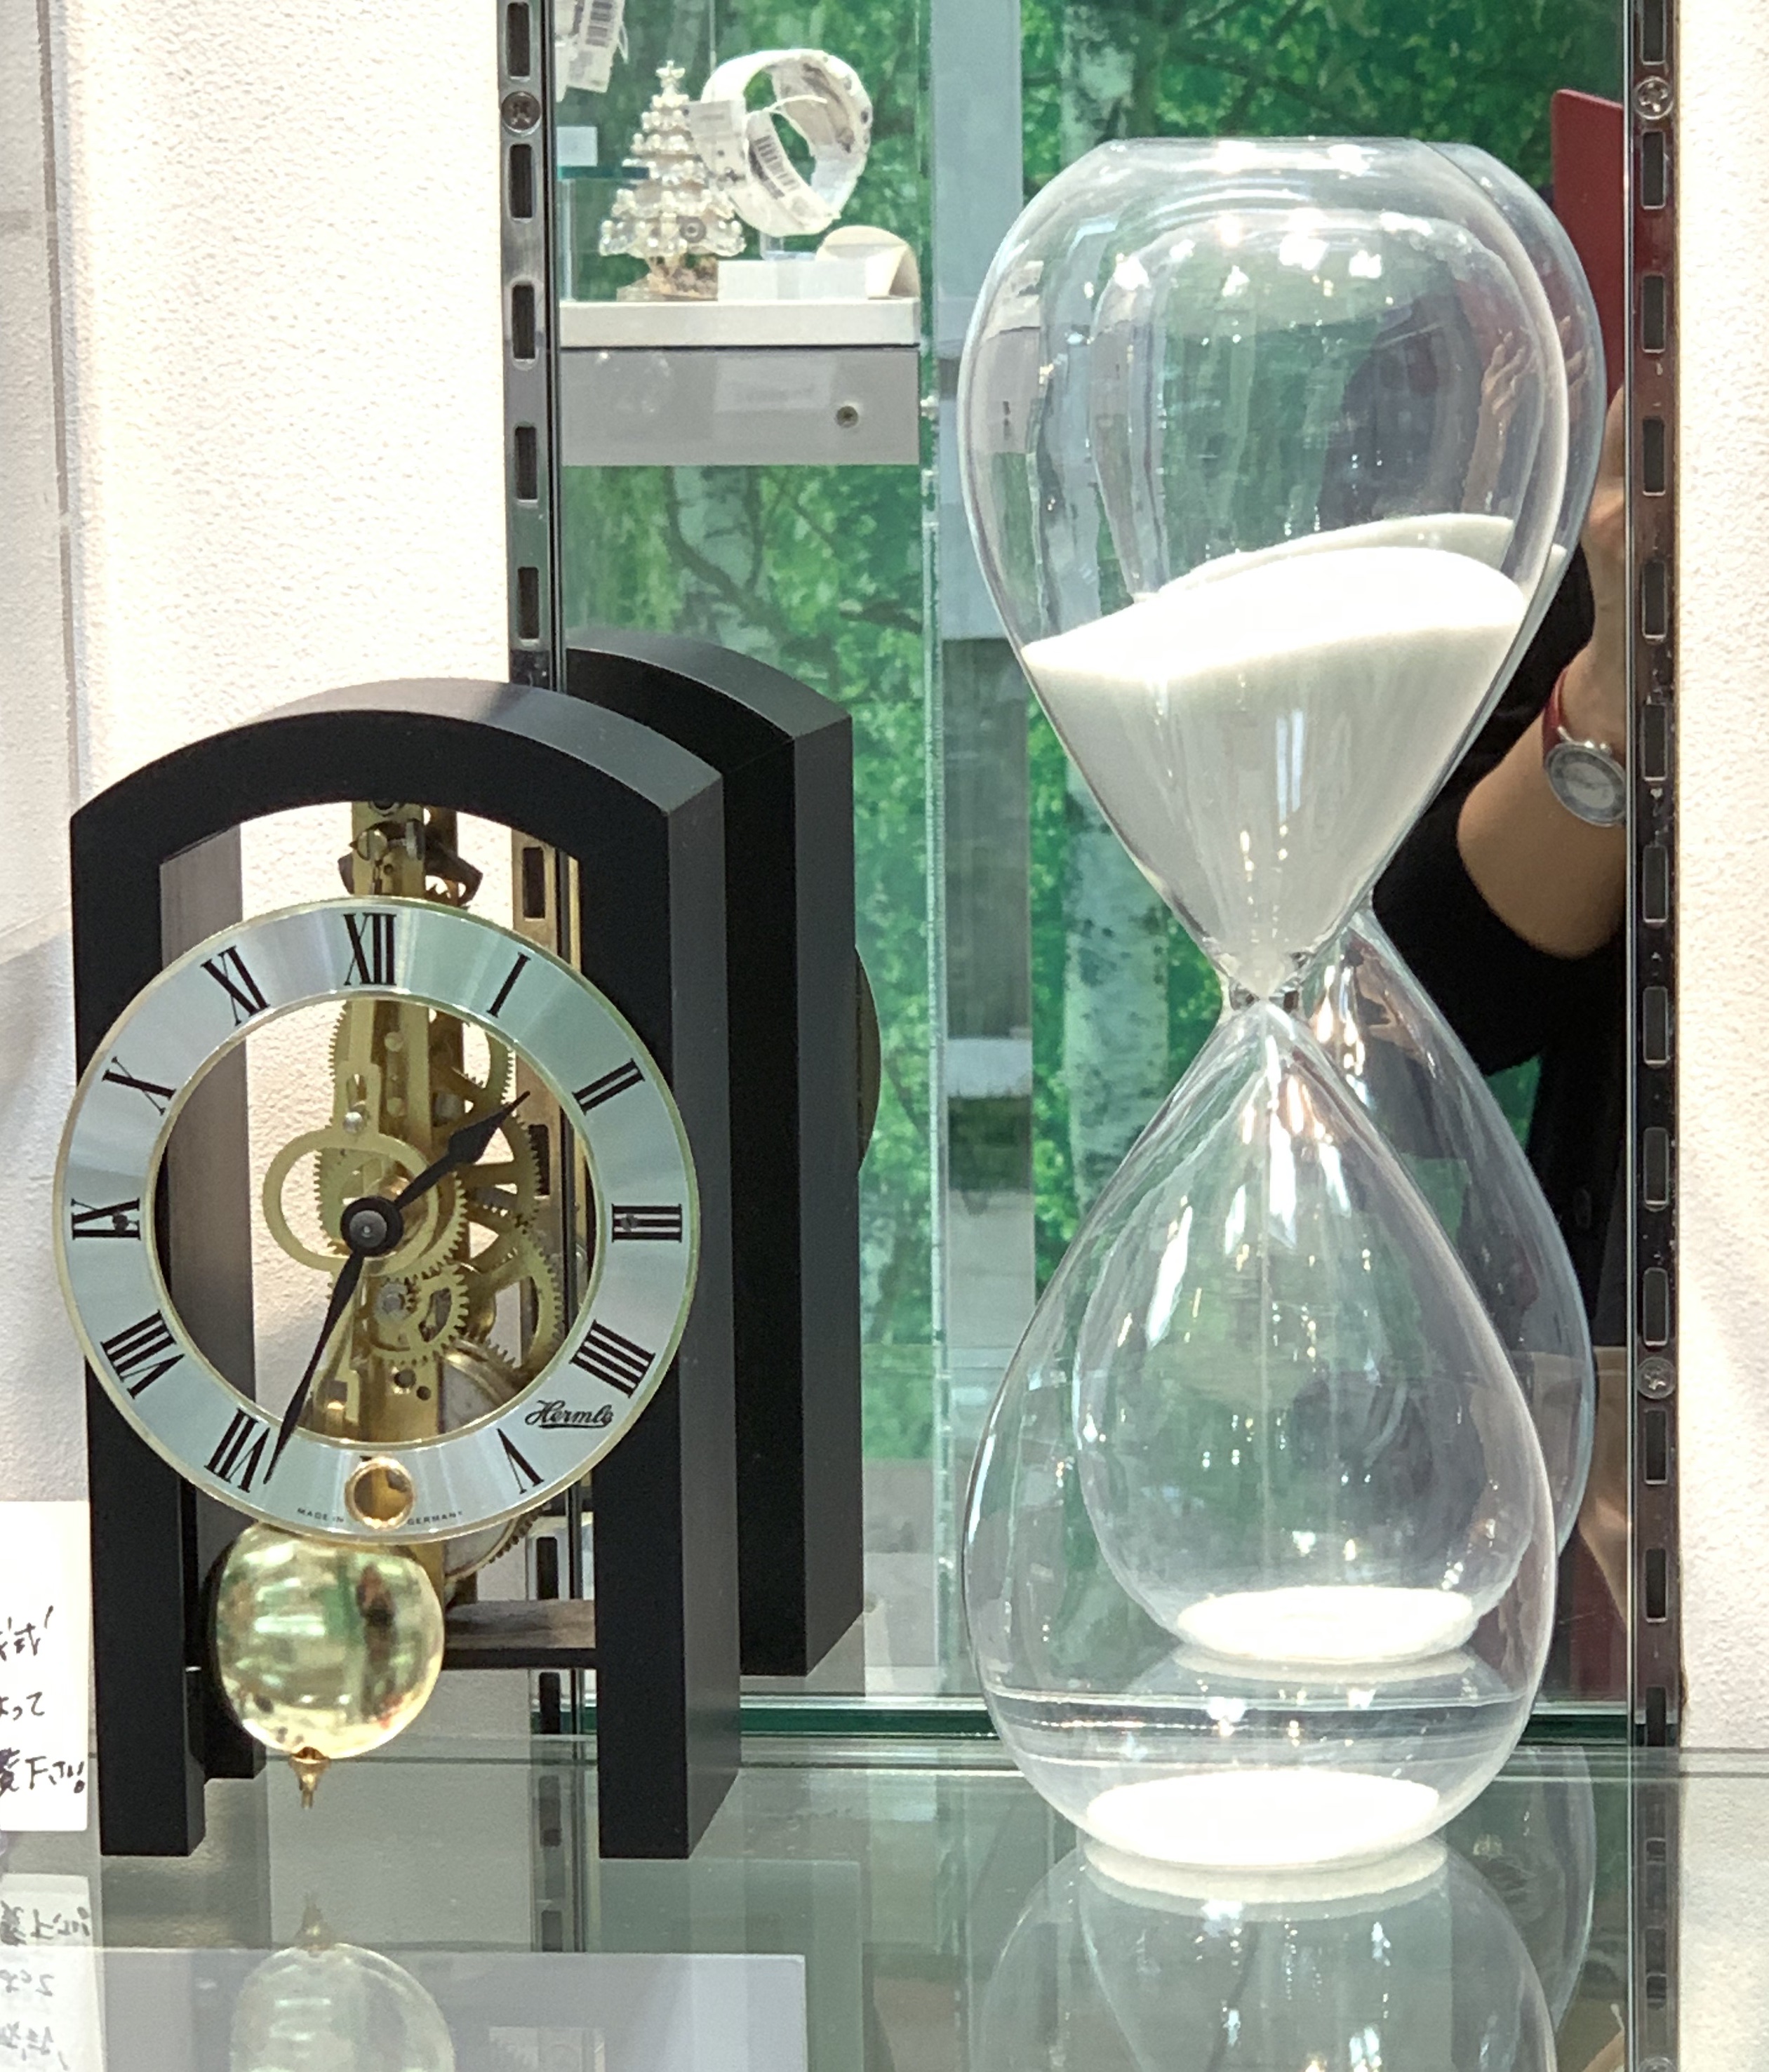 ゼンマイ式置き時計と砂時計